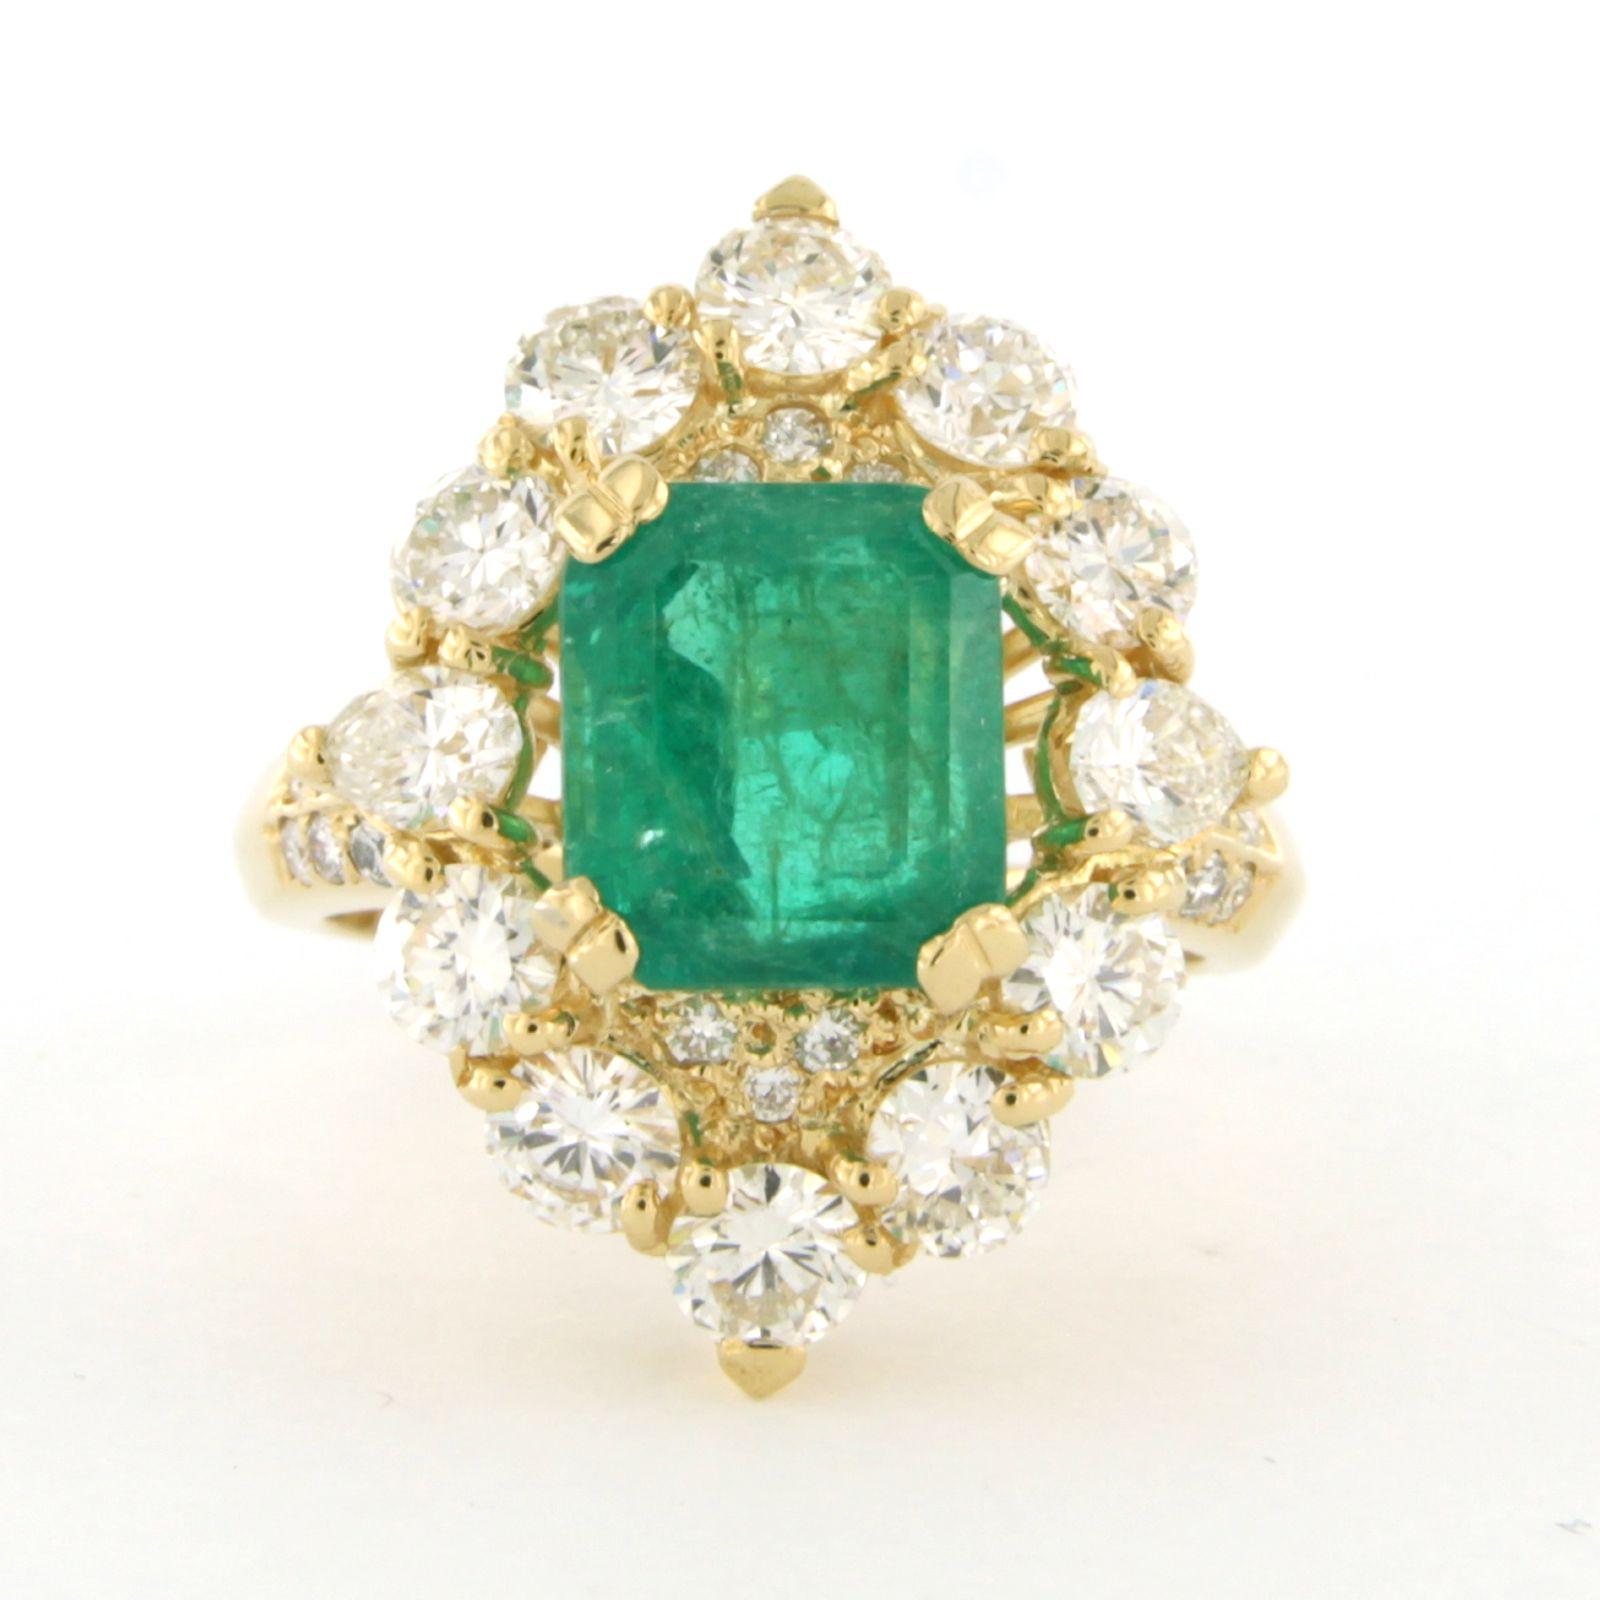 Ring aus 18k Gelbgold mit Smaragd bis. 3,30ct und birnenförmigen und brillantgeschliffenen Diamanten bis zu. 2.50ct - G/H - VS/SI - Ringgröße U.S. 6.75 - EU. 17.25(54)

detaillierte Beschreibung:

Die Oberseite des Rings ist 2,3 cm mal 1,8 cm breit